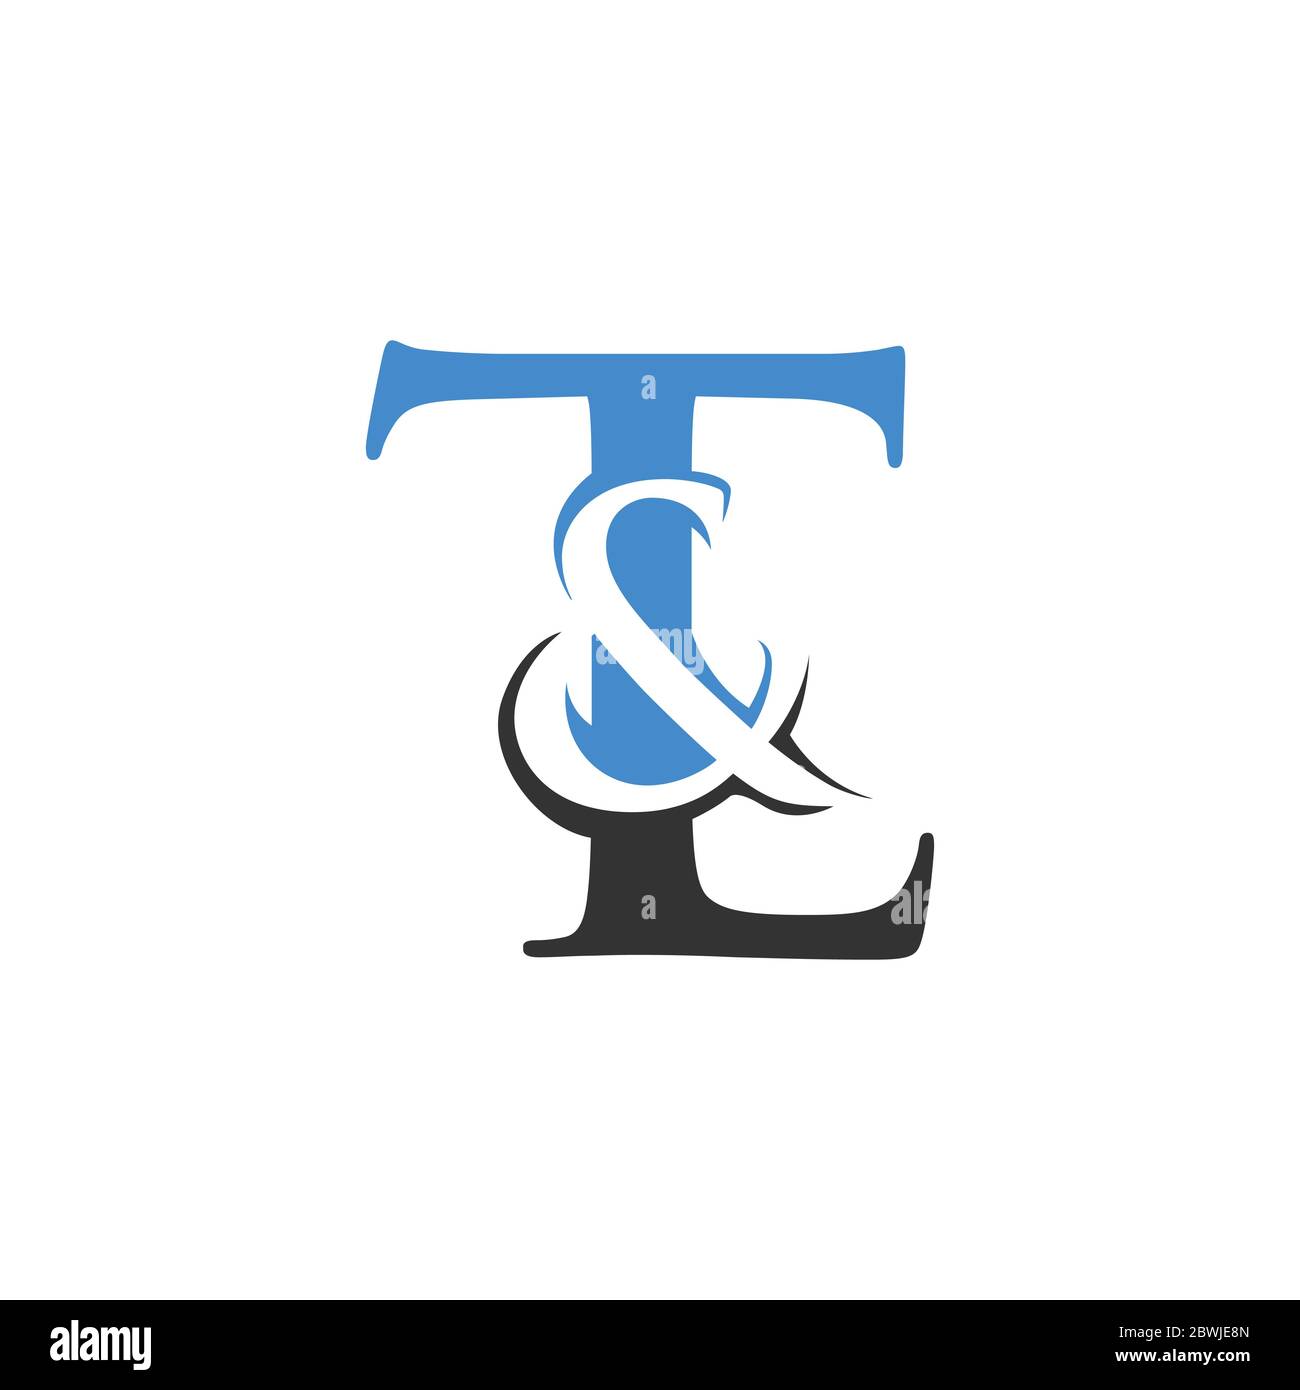 Letter T & L kreatives Design Logo Vektor-Illustration isoliert auf einem weißen Hintergrund Stock Vektor